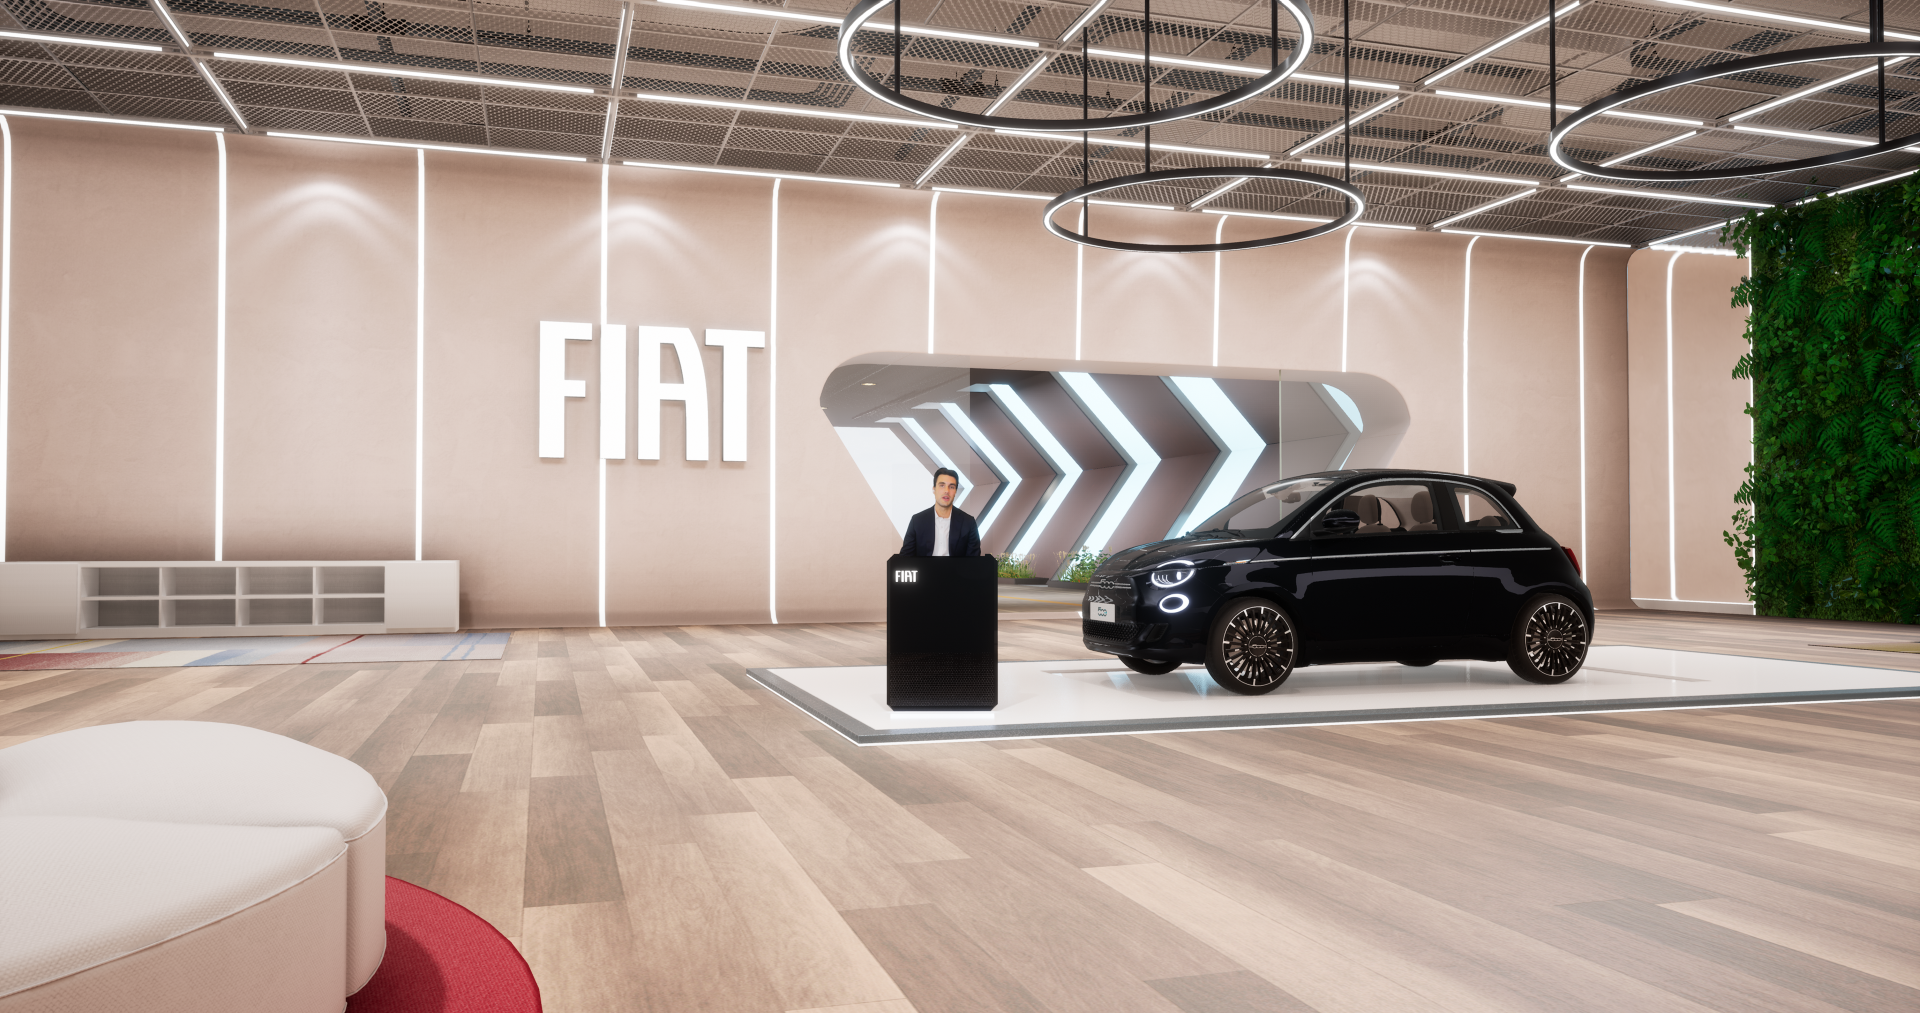 Η Fiat στον κόσμο του metaverse